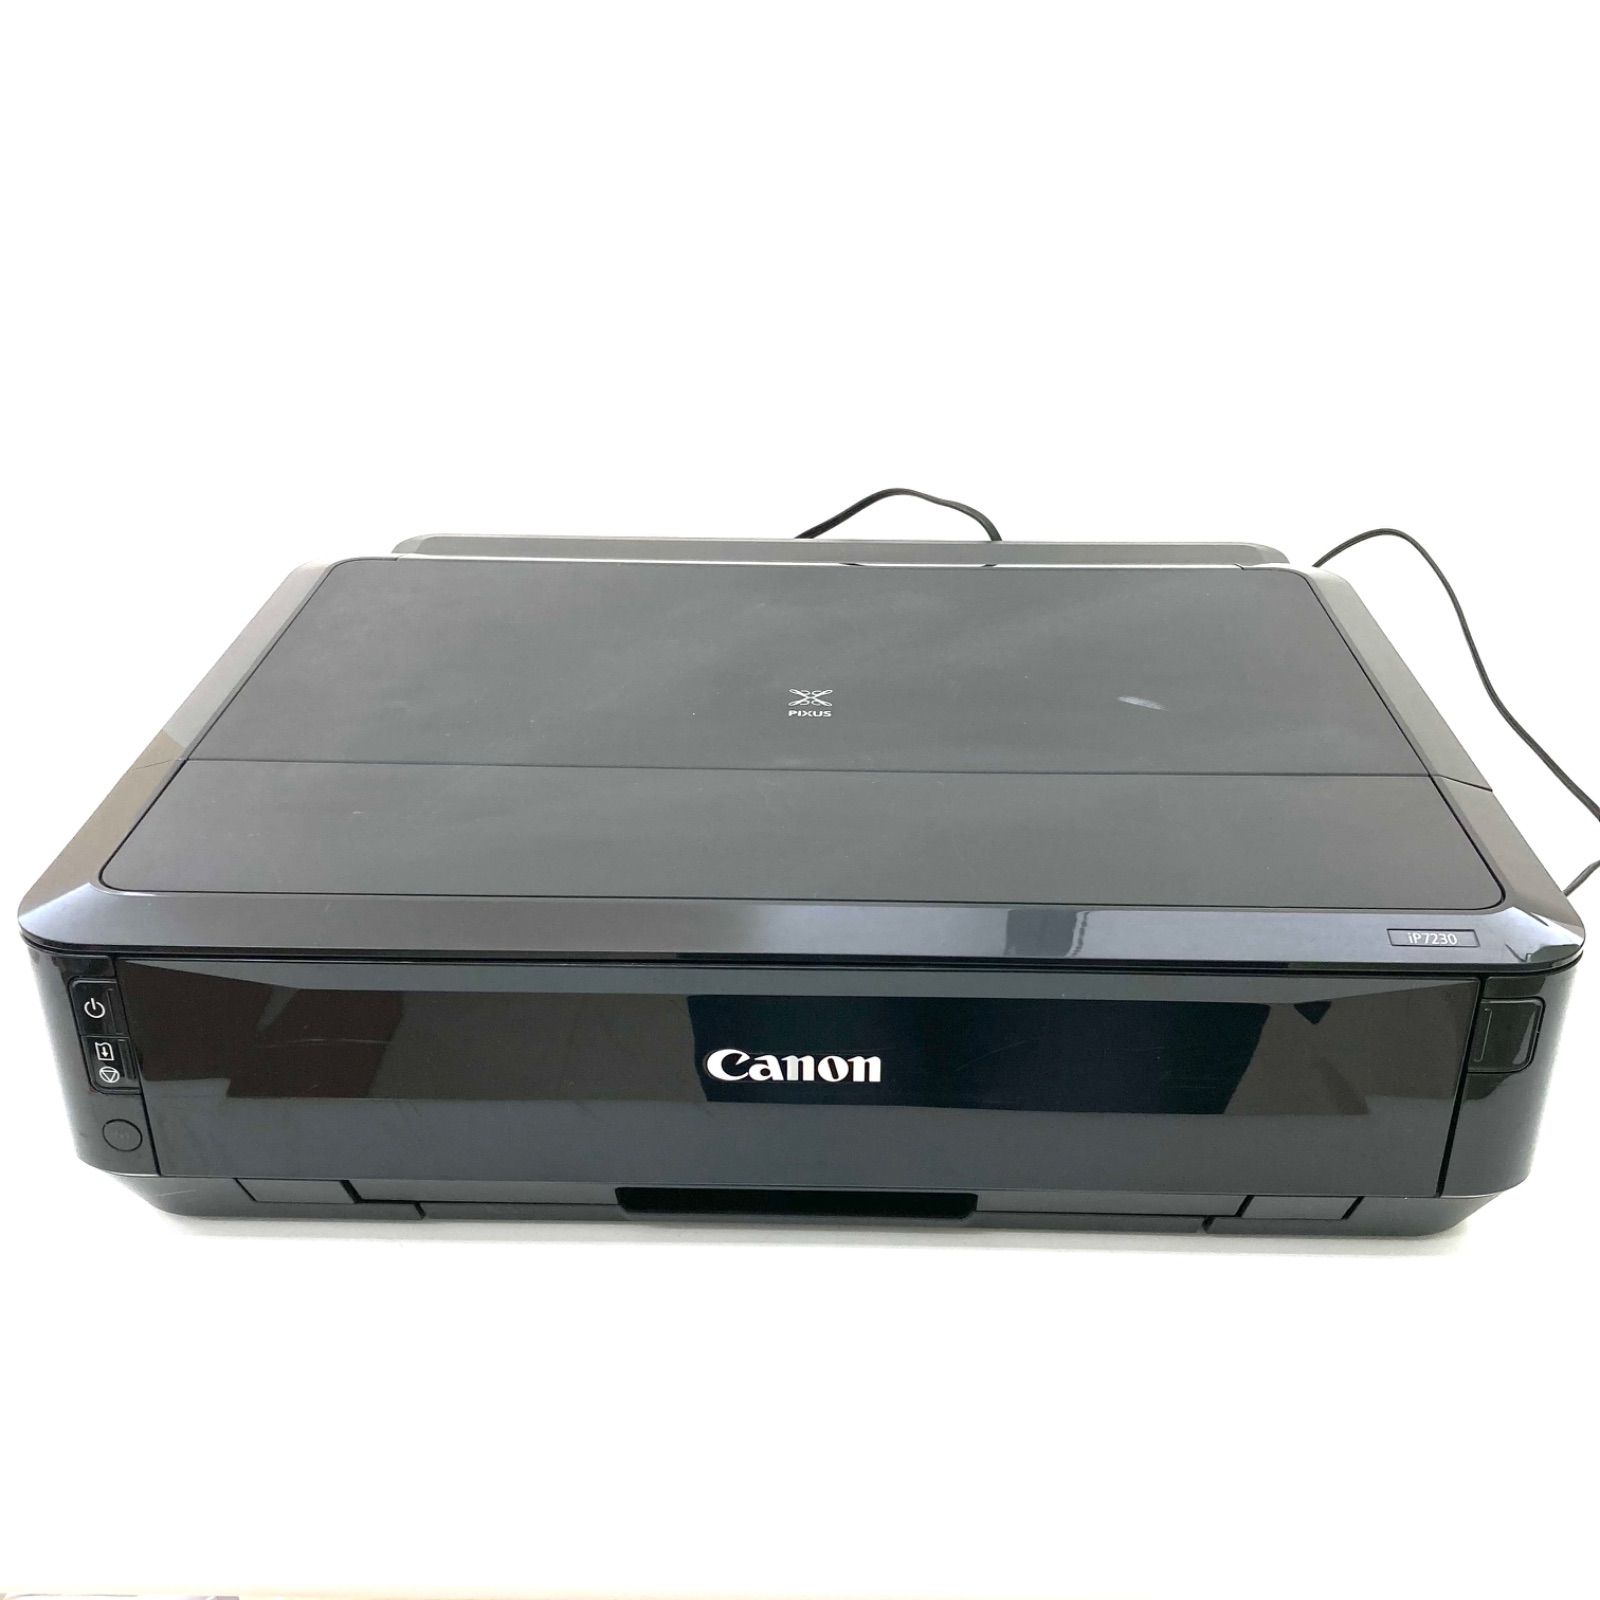 【Canon】キャノン インクジェットプリンター PIXUS iP7230 Wi-Fi対応 ブラック ジャンク品☆